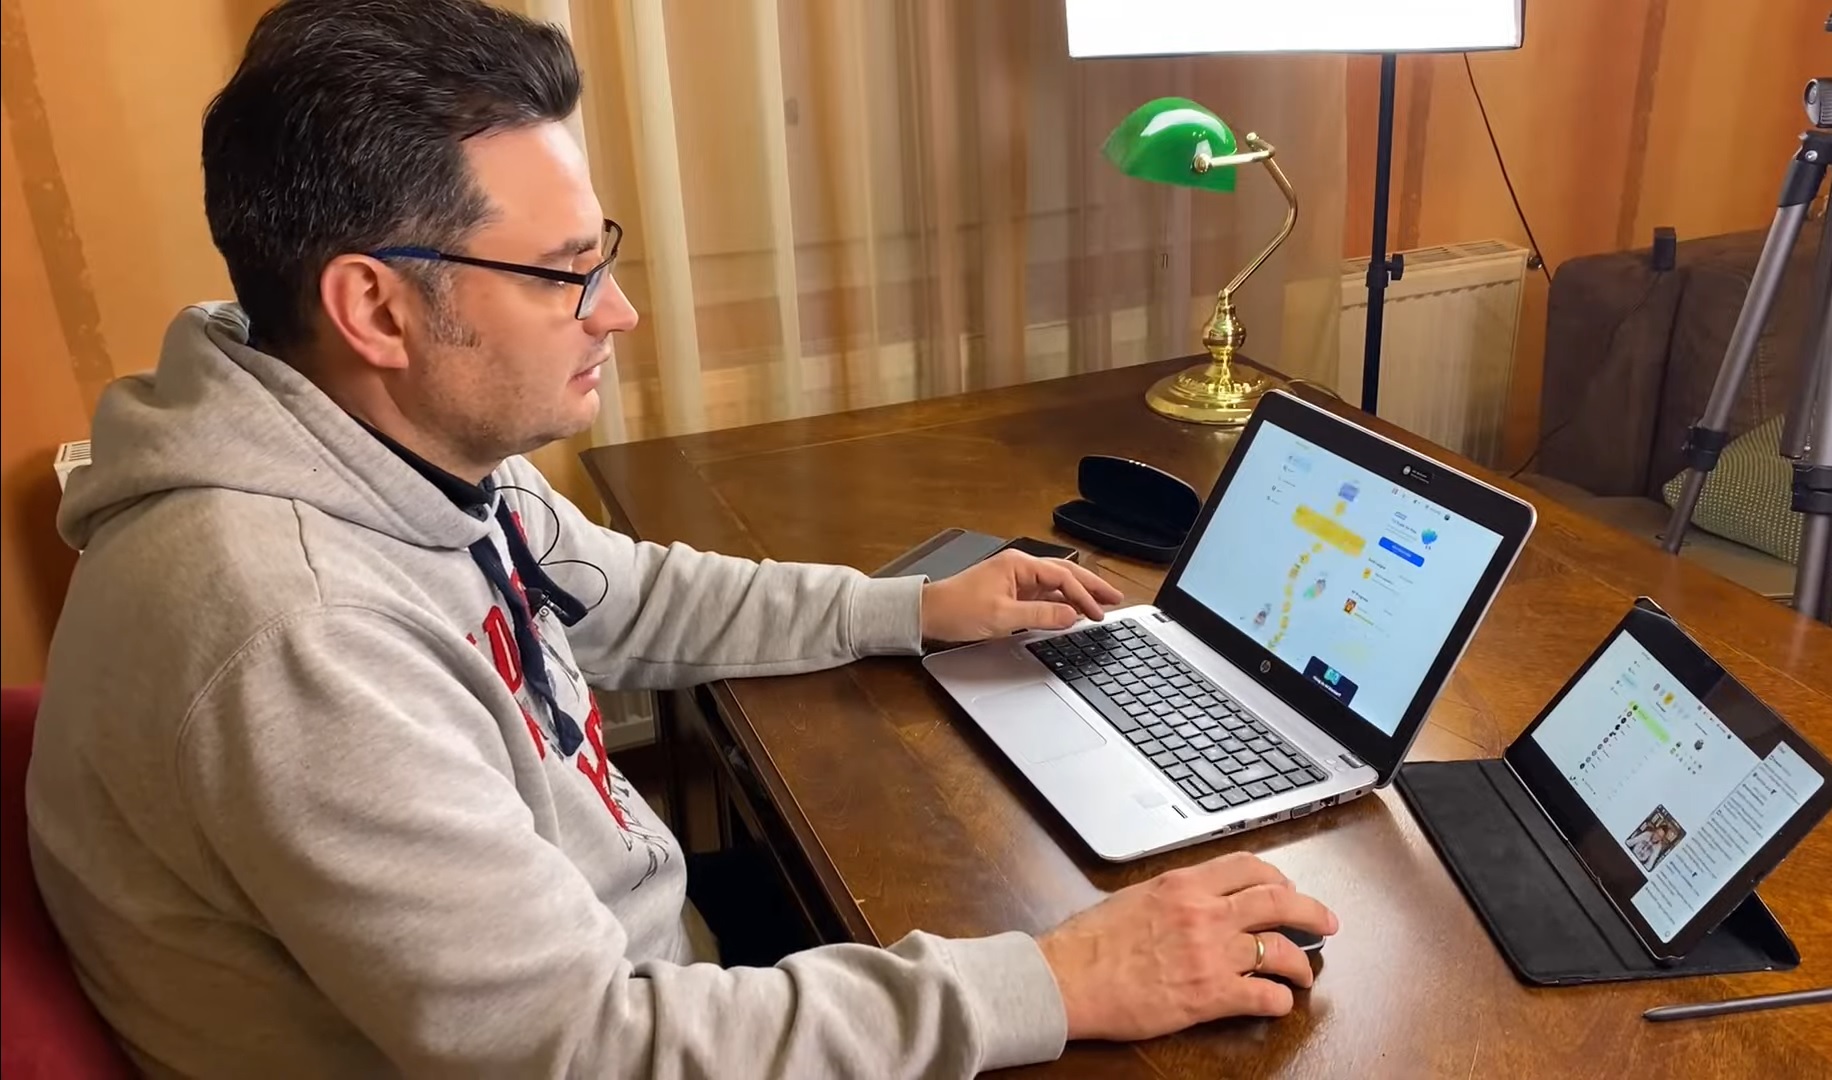 Márki-Zay Péter gameplay-videót csinált arról, hogy románul tanul a Duolingóval